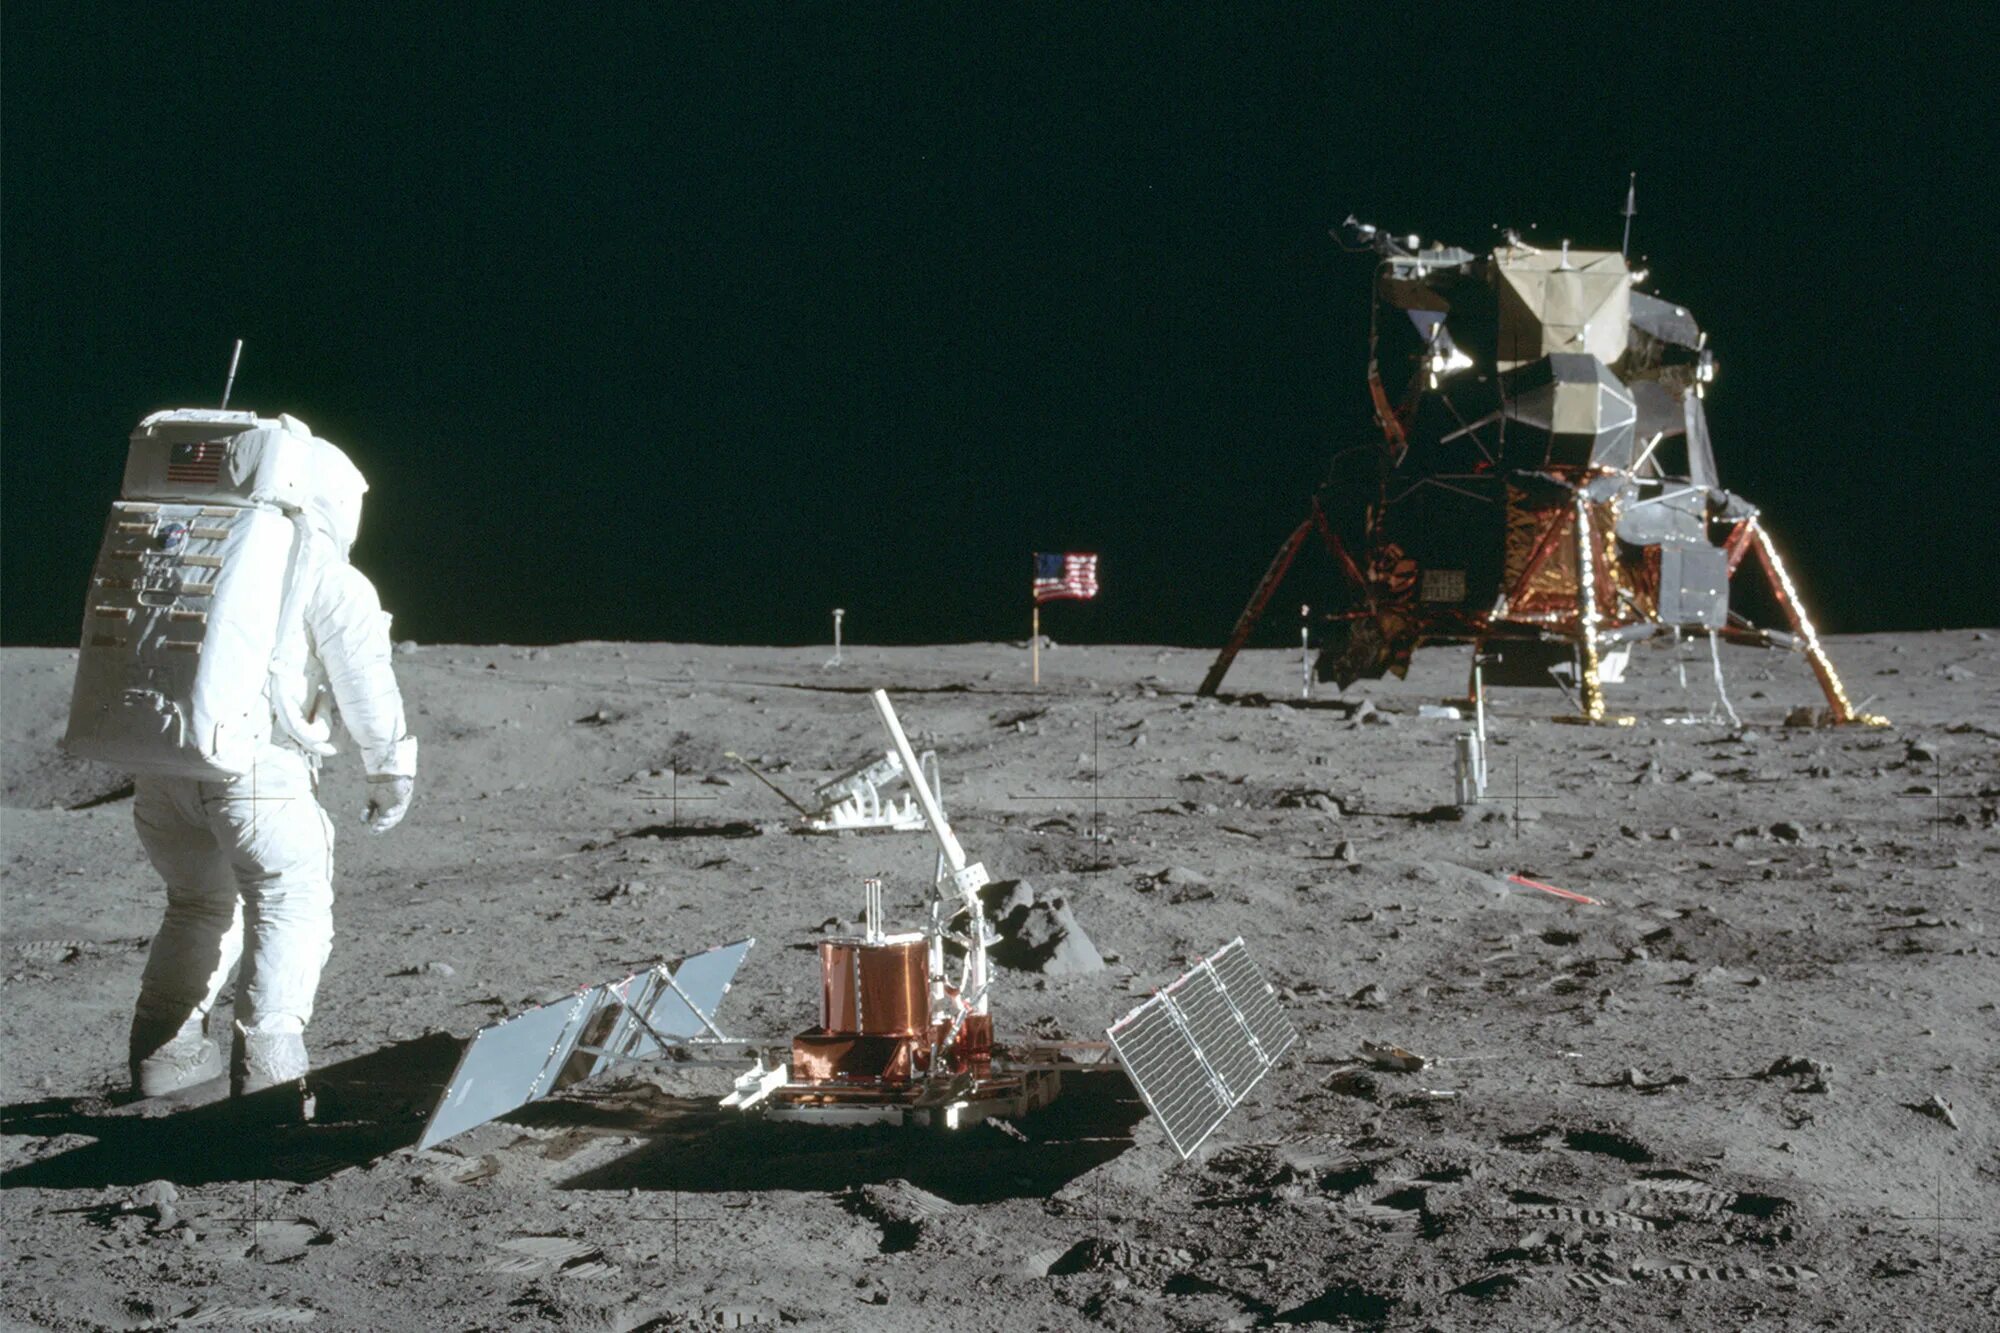 Миссия Аполлон 11. Старт Аполлона 11. Апполо 11 на Луне. First land on the moon